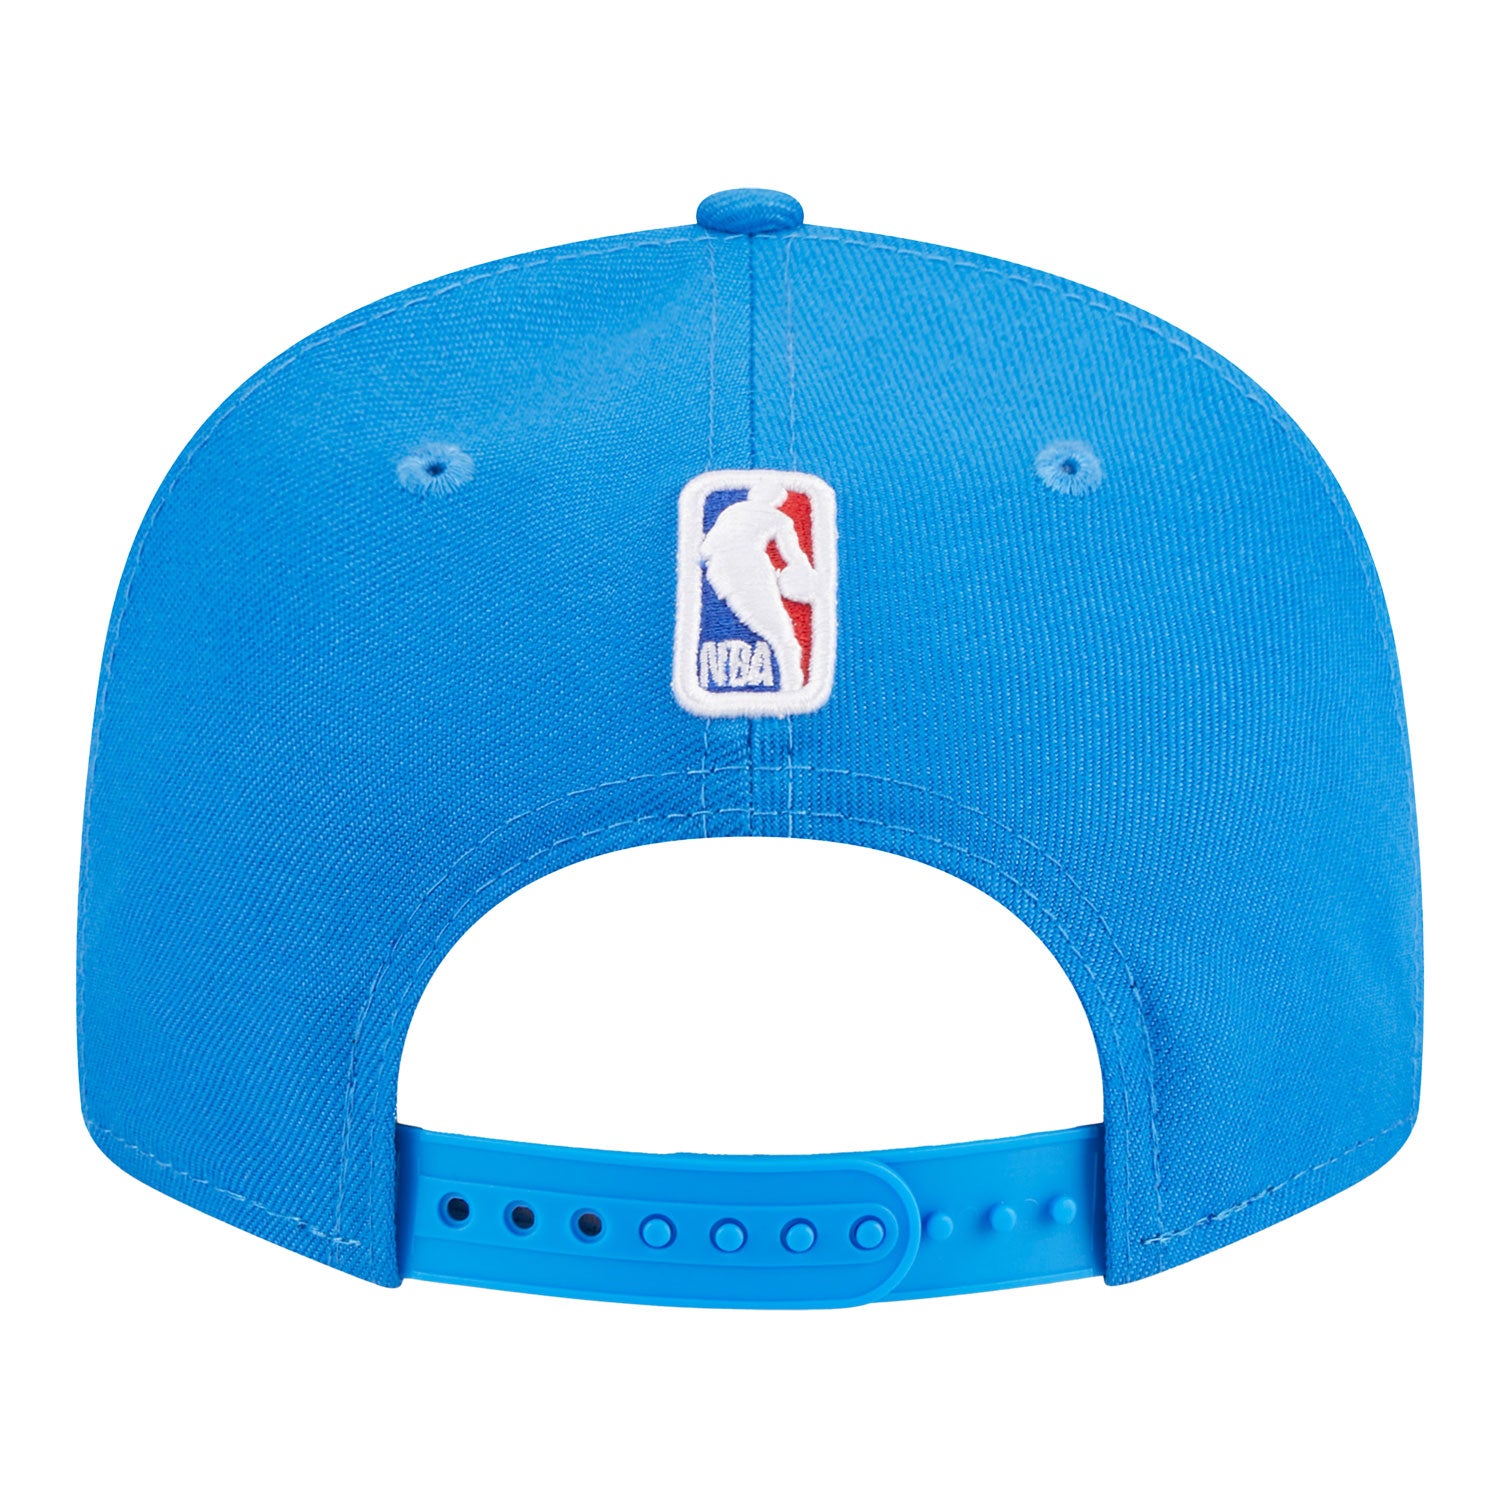 New Era Oklahoma City Thunder NBA Draft 2022 59FIFTY Fitted Hat